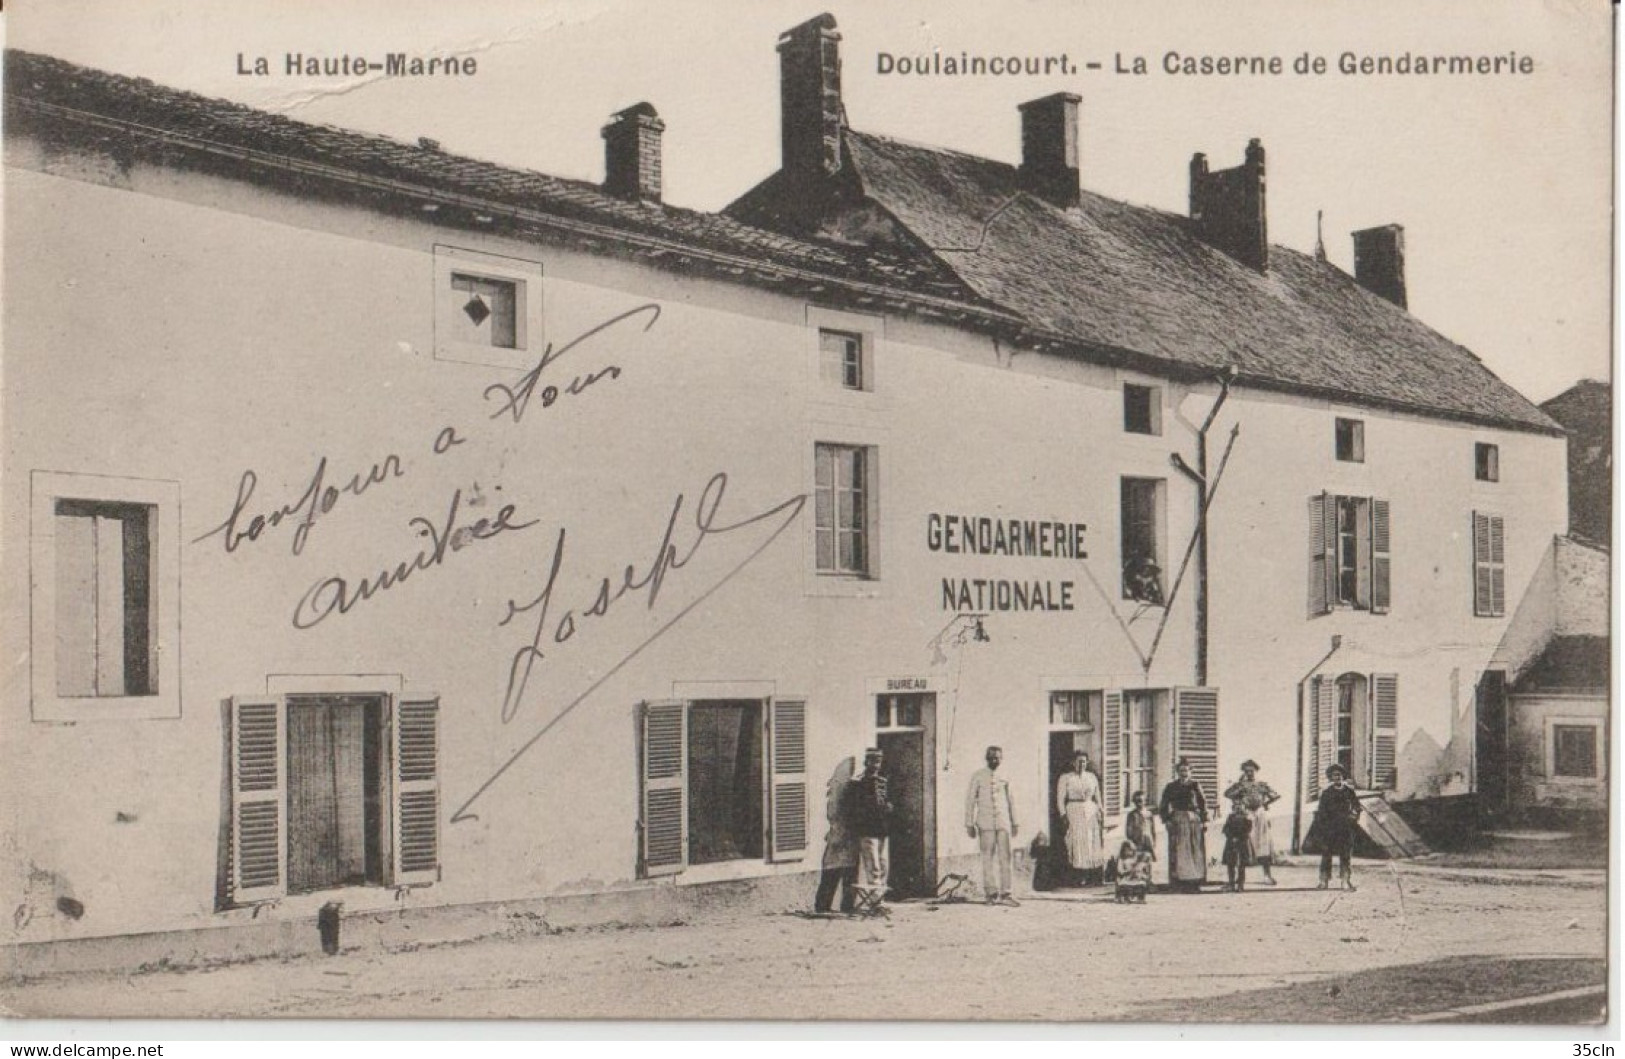 DOULAINCOURT - La Caserne De Gendarmerie. Personnages Devant La Gendarmerie. Carte Animée. - Doulaincourt